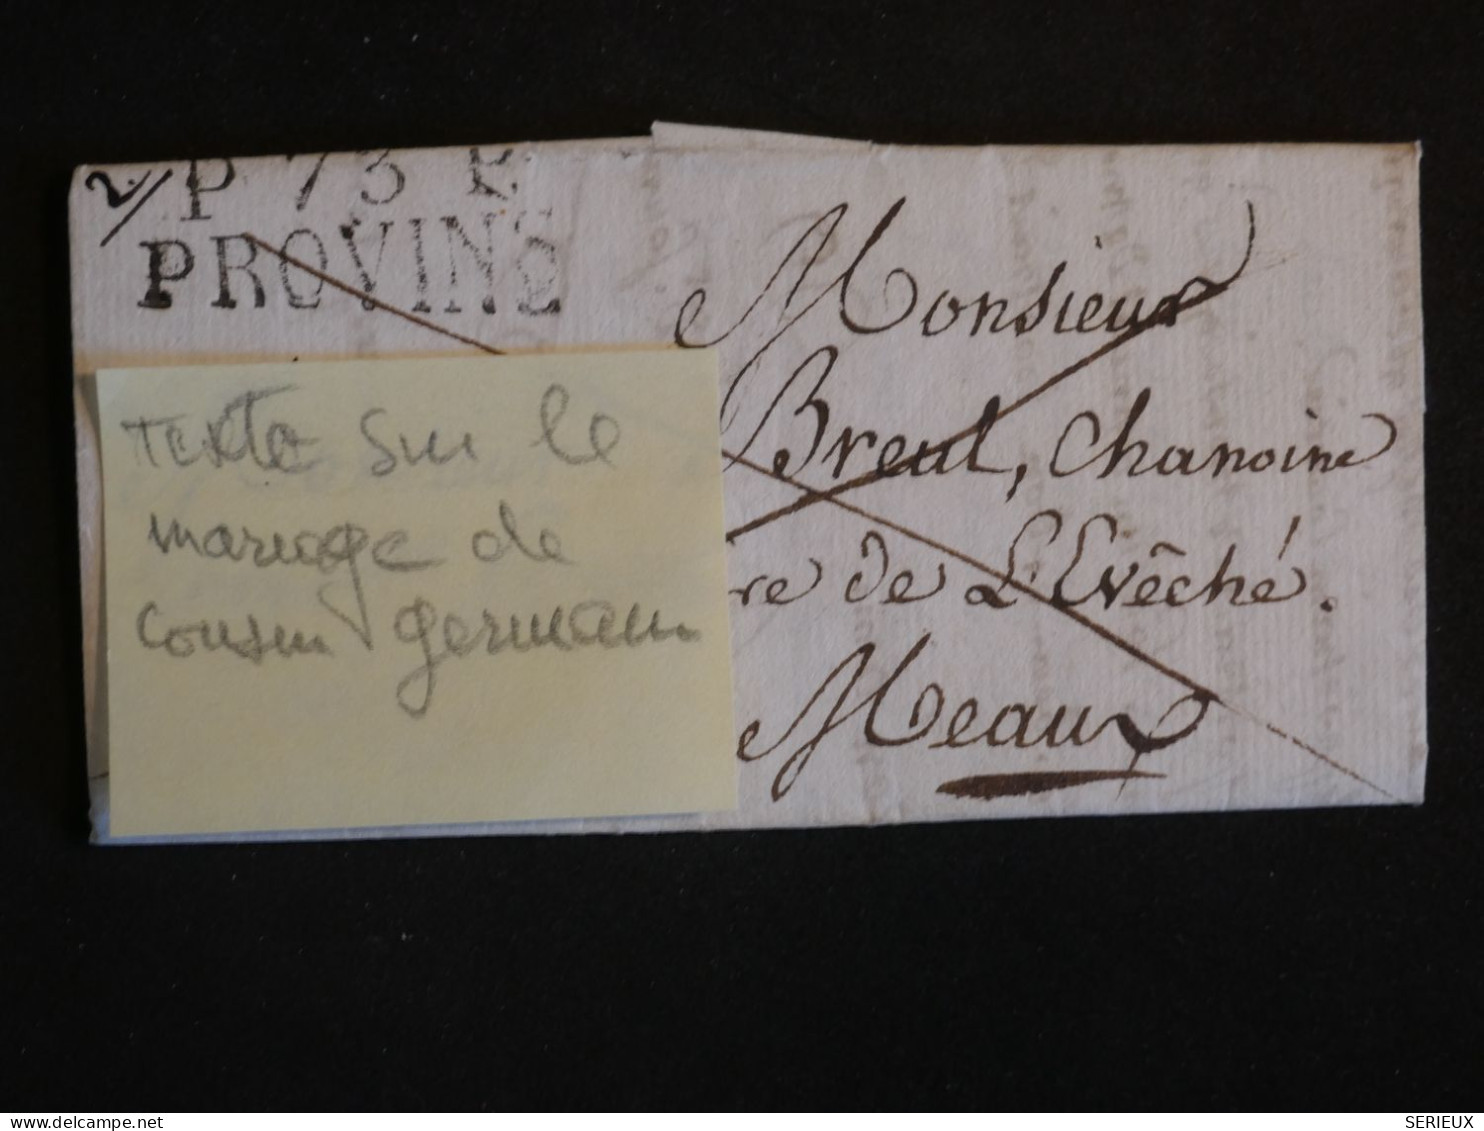 DP3  FRANCE  LETTRE  1825 PETIT BUREAU  PROVINS   A  MEAUX  +TEMOIGNAGE MARIAGE + AFF. INTERESSANT++ - 1801-1848: Vorläufer XIX